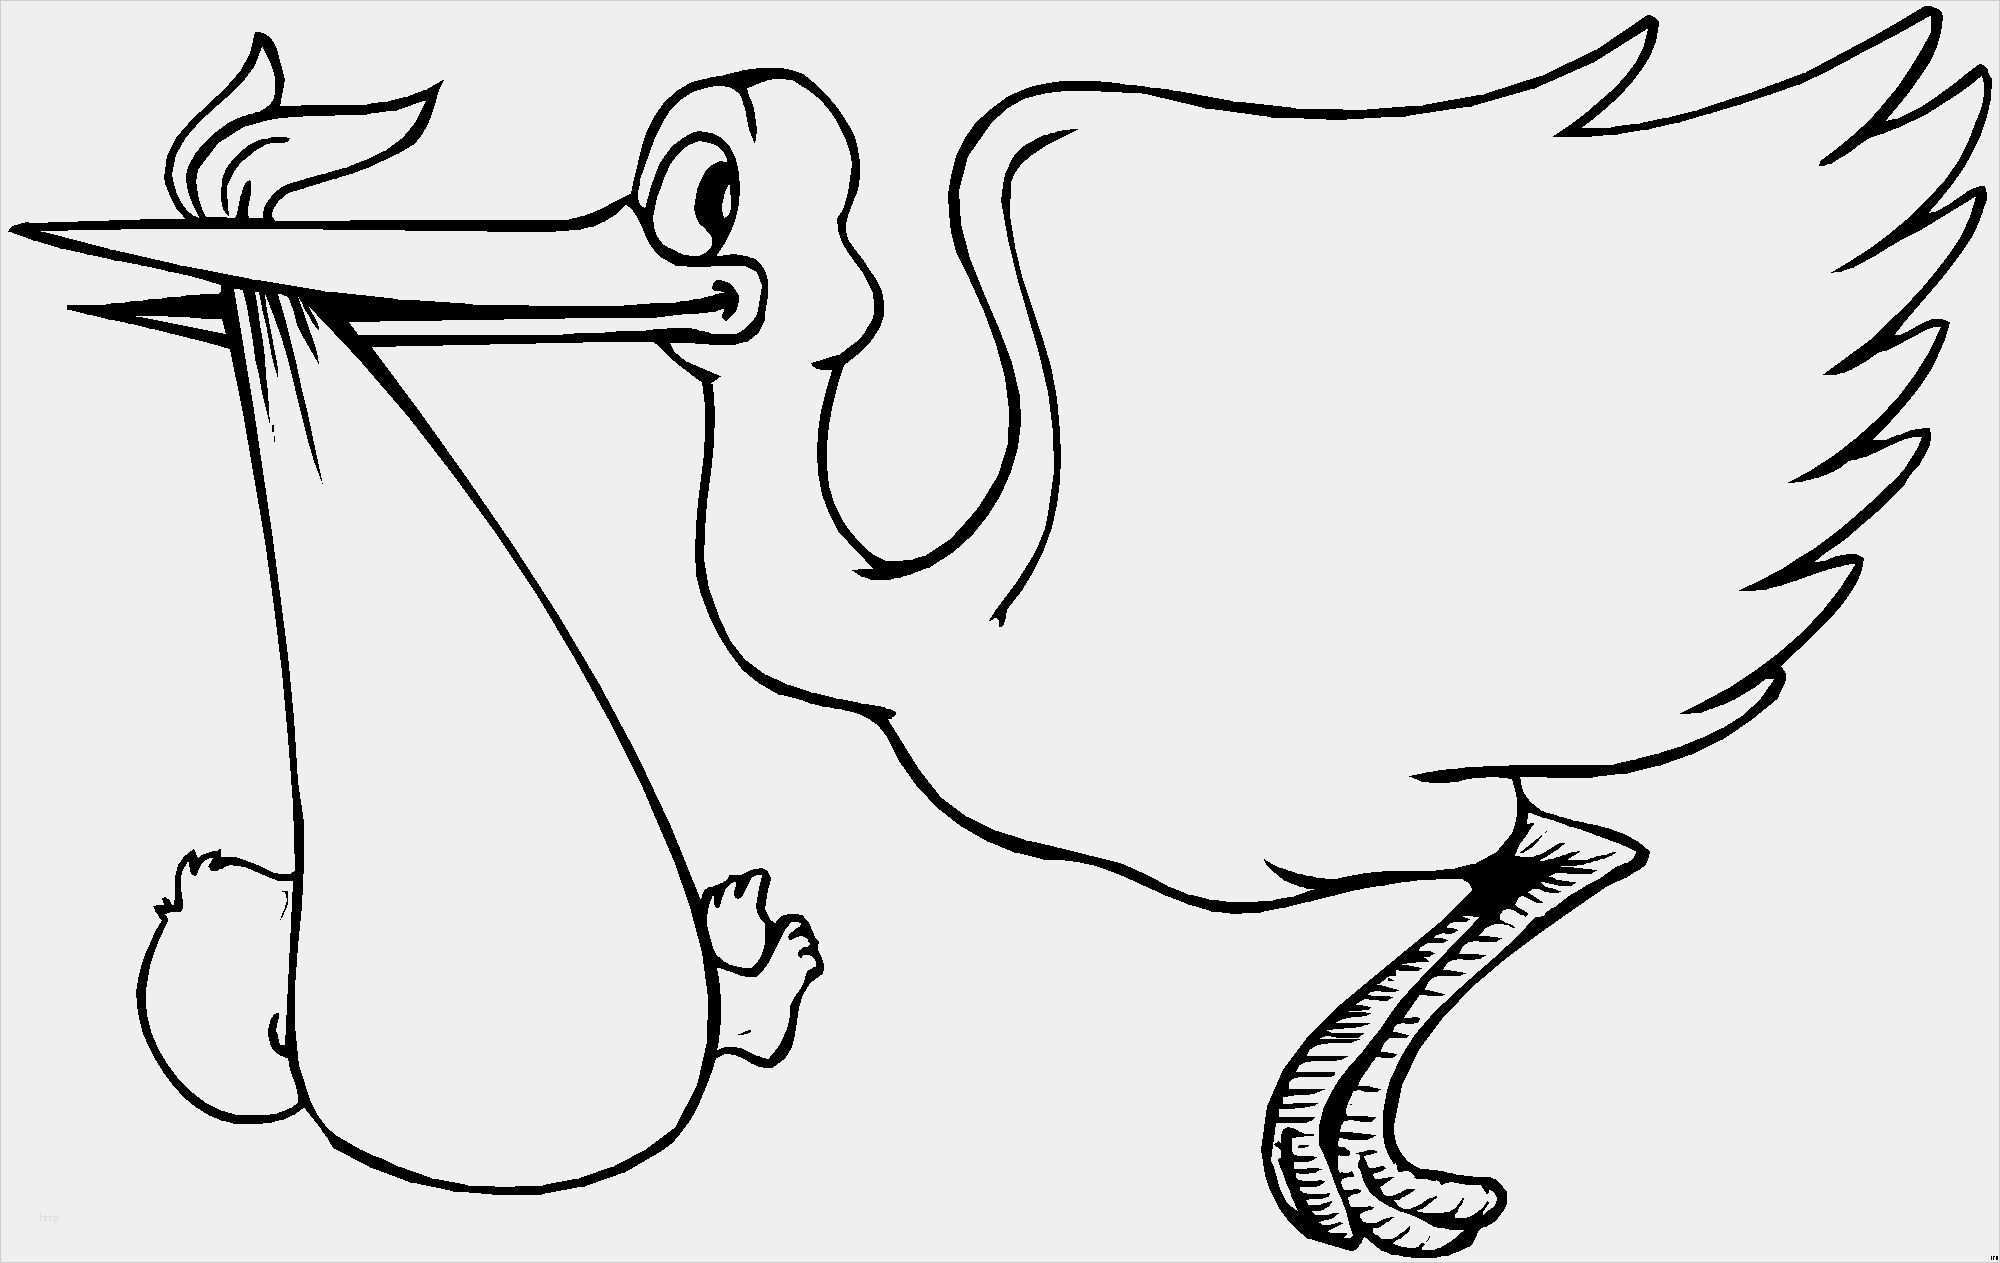 35 Genial Storch Schablonen Vorlagen Abbildung Zeichnung Ideen Bleistift Malvorlagen Schablonen Vorlagen